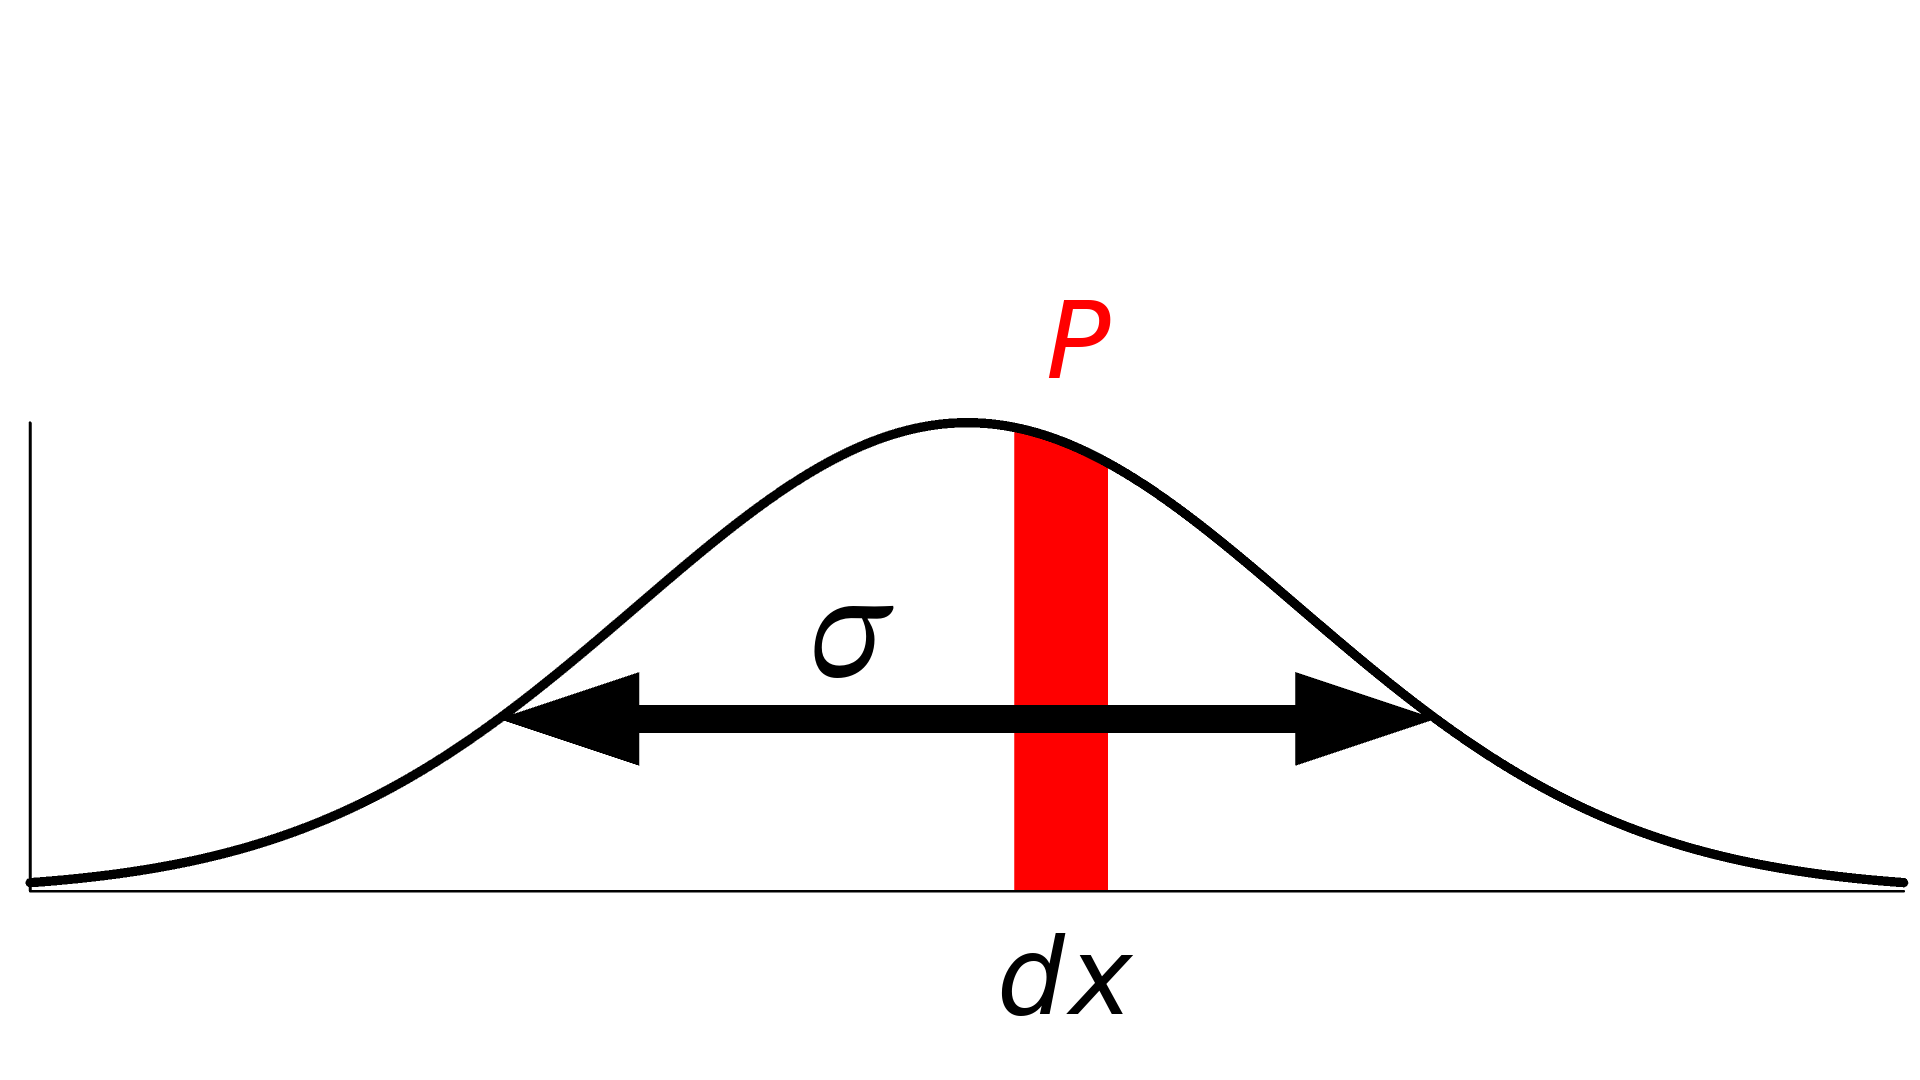 带有测量误差的标准差、无穷小范围和概率标记的钟形曲线，其中概率用红色突出显示。